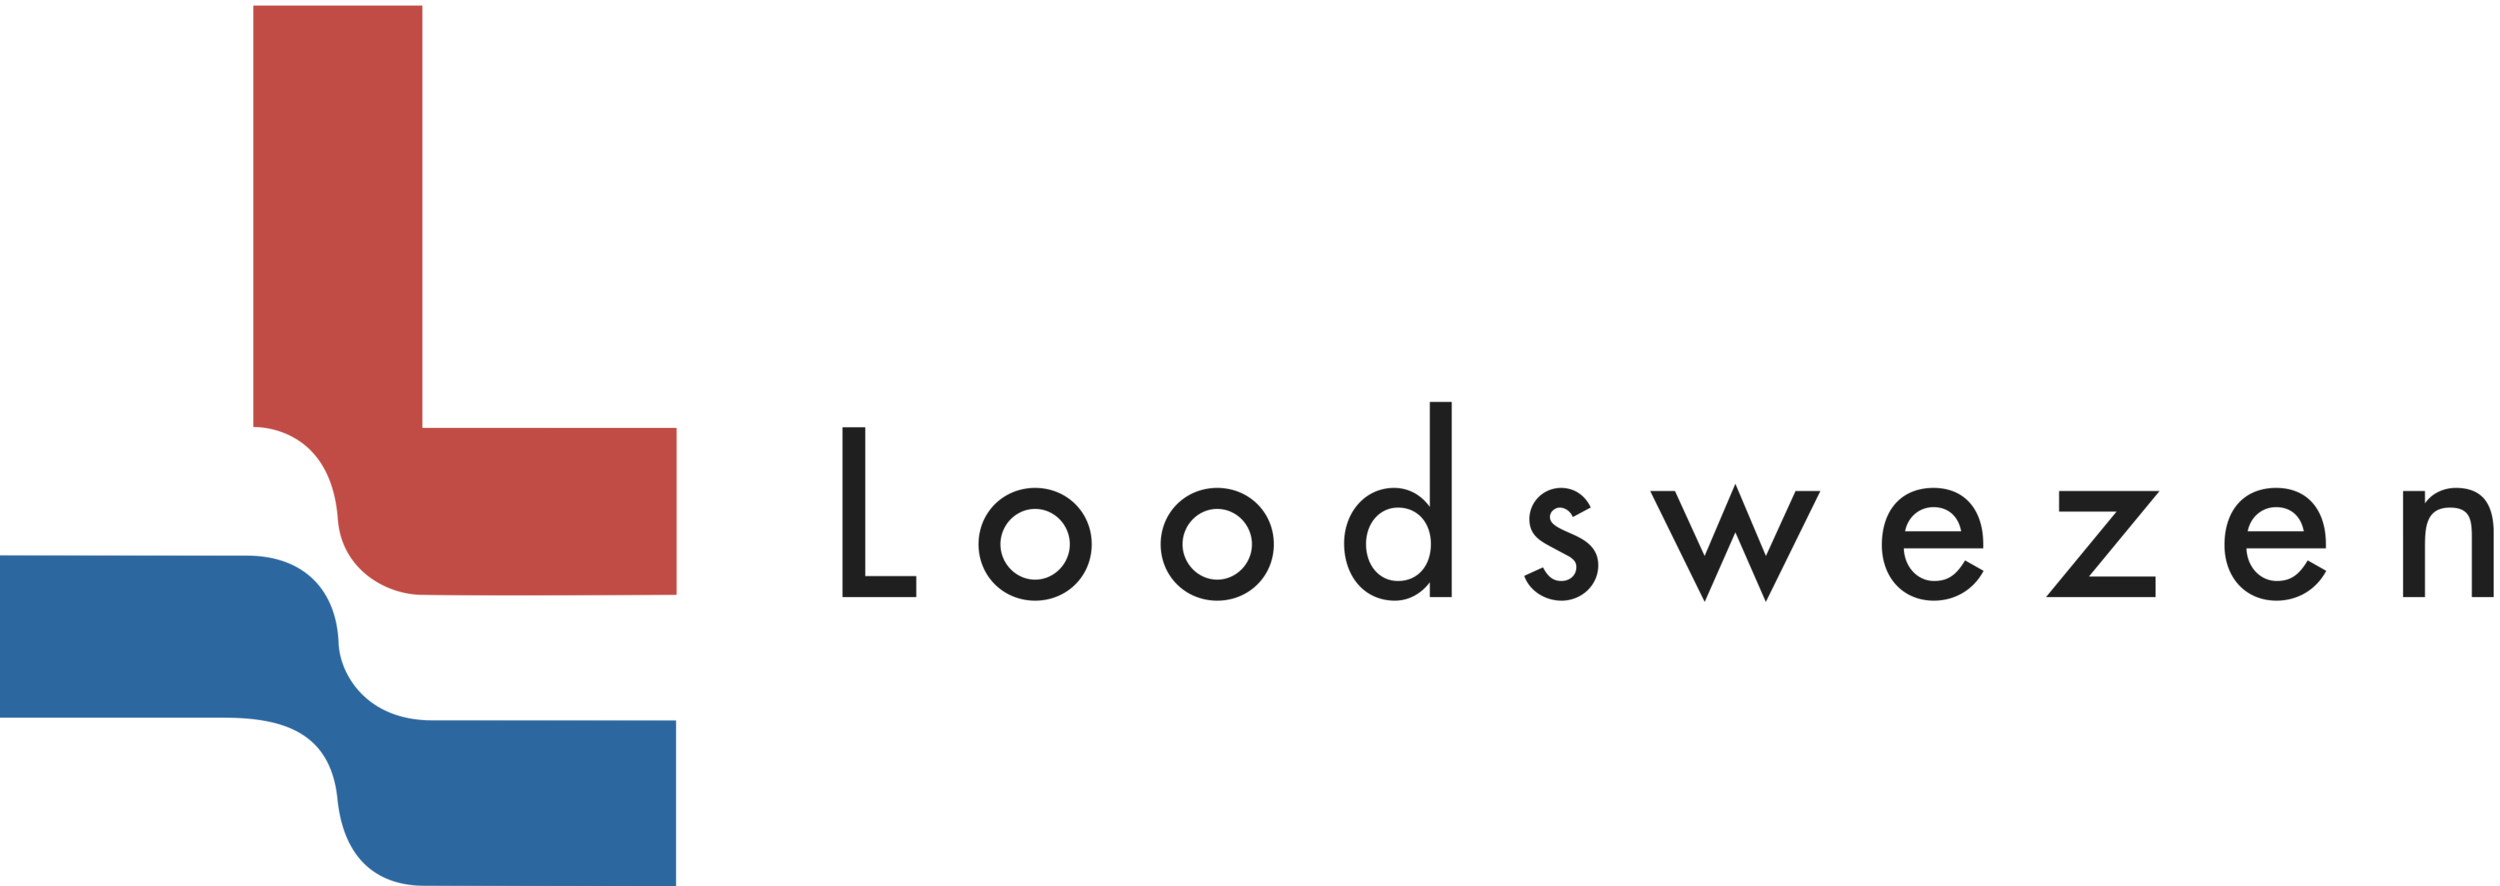 loodswezen-logo.png